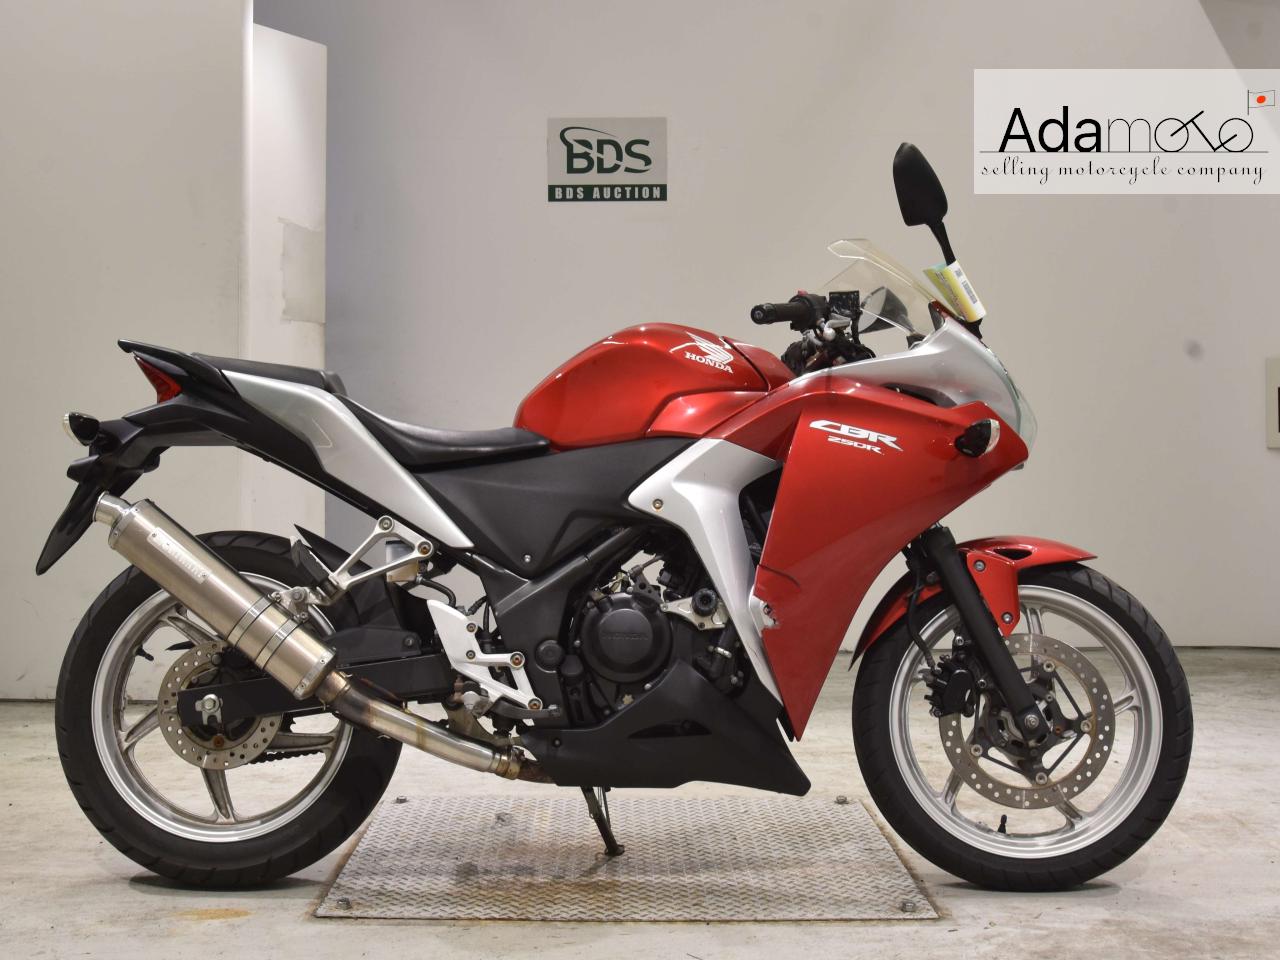 Honda CBR250R 3 - Adamoto - Motorcycles from Japan